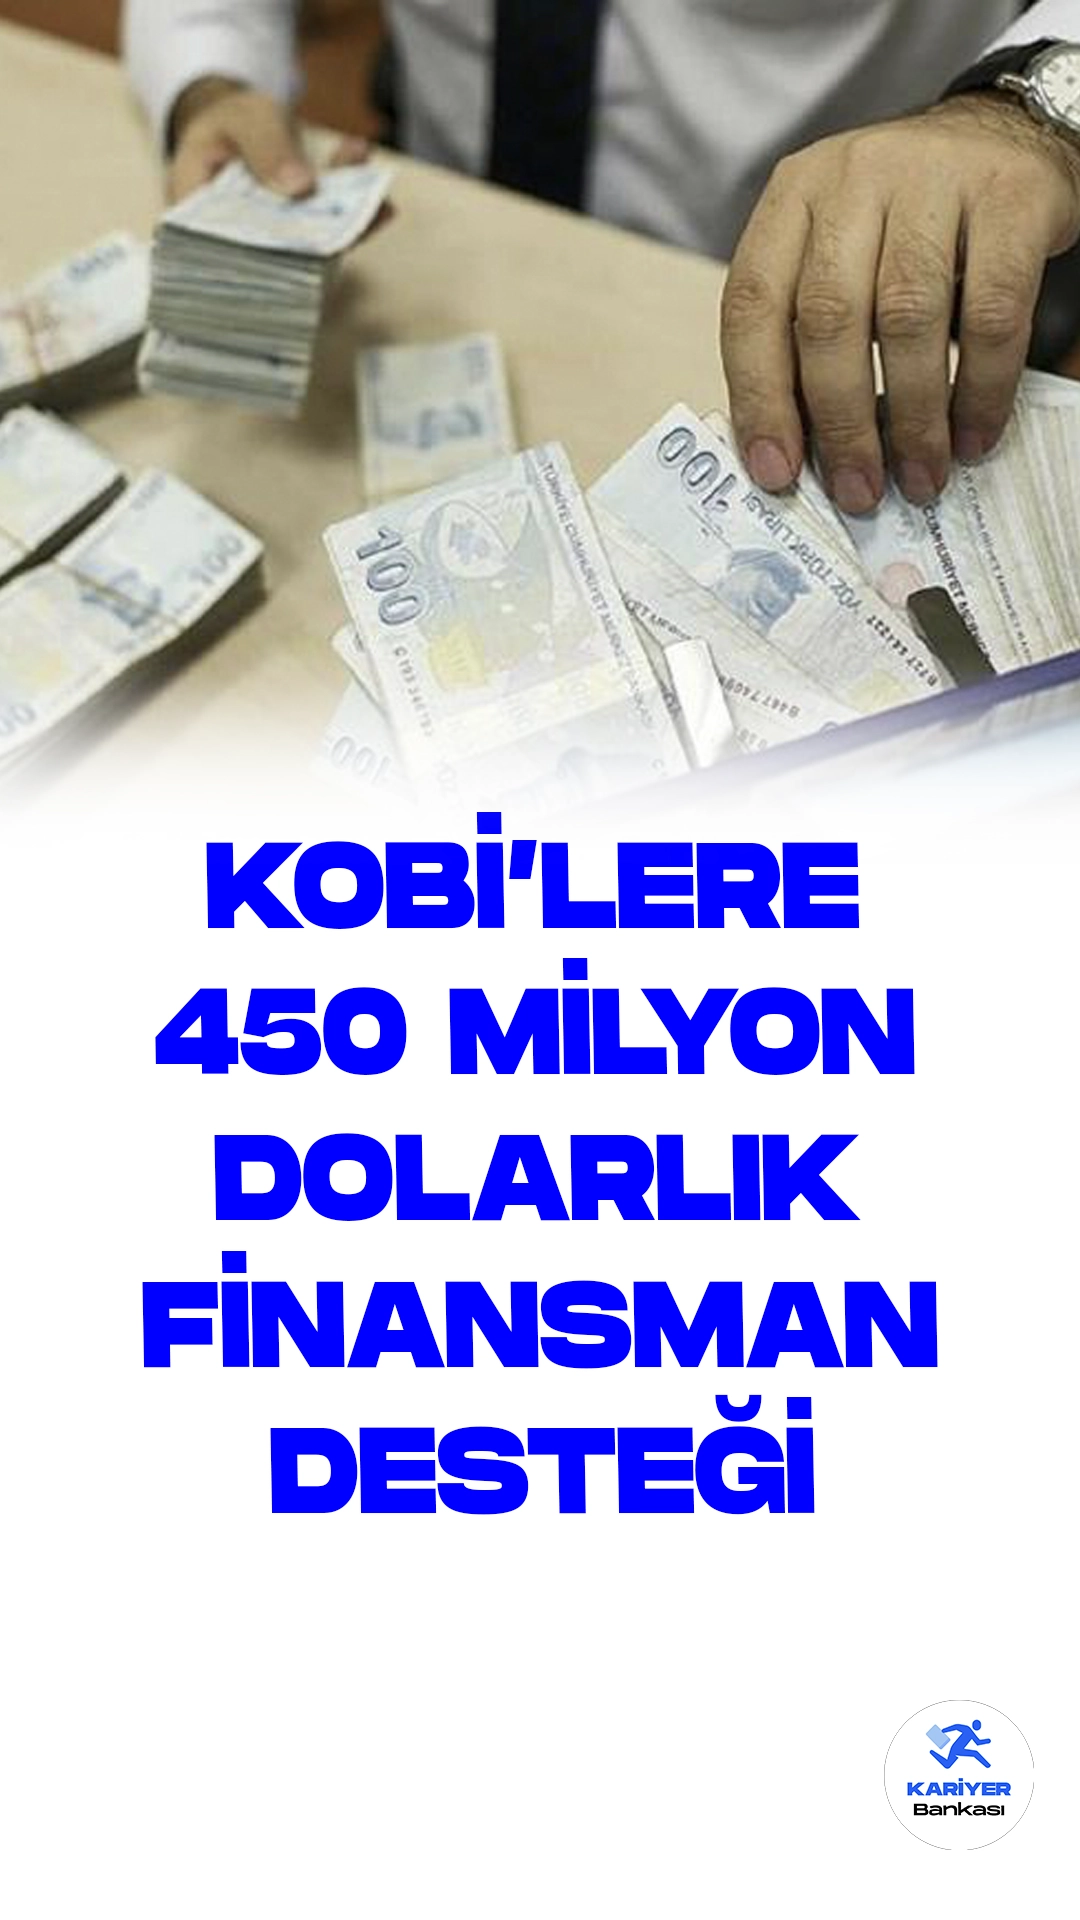 KOBİ'lere 450 milyon dolarlık finansman desteği.Sanayi ve Teknoloji Bakanı Mehmet Fatih Kacır: Cumhurbaşkanı Erdoğan'ın Kahramanmaraş Depremleri İçin Açıkladığı 450 Milyon Dolarlık Finansman, İşletmelerin Hesaplarına Aktarılıyor.Sanayi ve Teknoloji Bakanı Mehmet Fatih Kacır, Cumhurbaşkanı Recep Tayyip Erdoğan'ın liderliğinde, Kahramanmaraş merkezli depremlerden etkilenen KOBİ'ler için duyurulan 450 milyon dolarlık finansmanın, işletmelerin hesaplarına aktarılmaya başlandığını bildirdi.